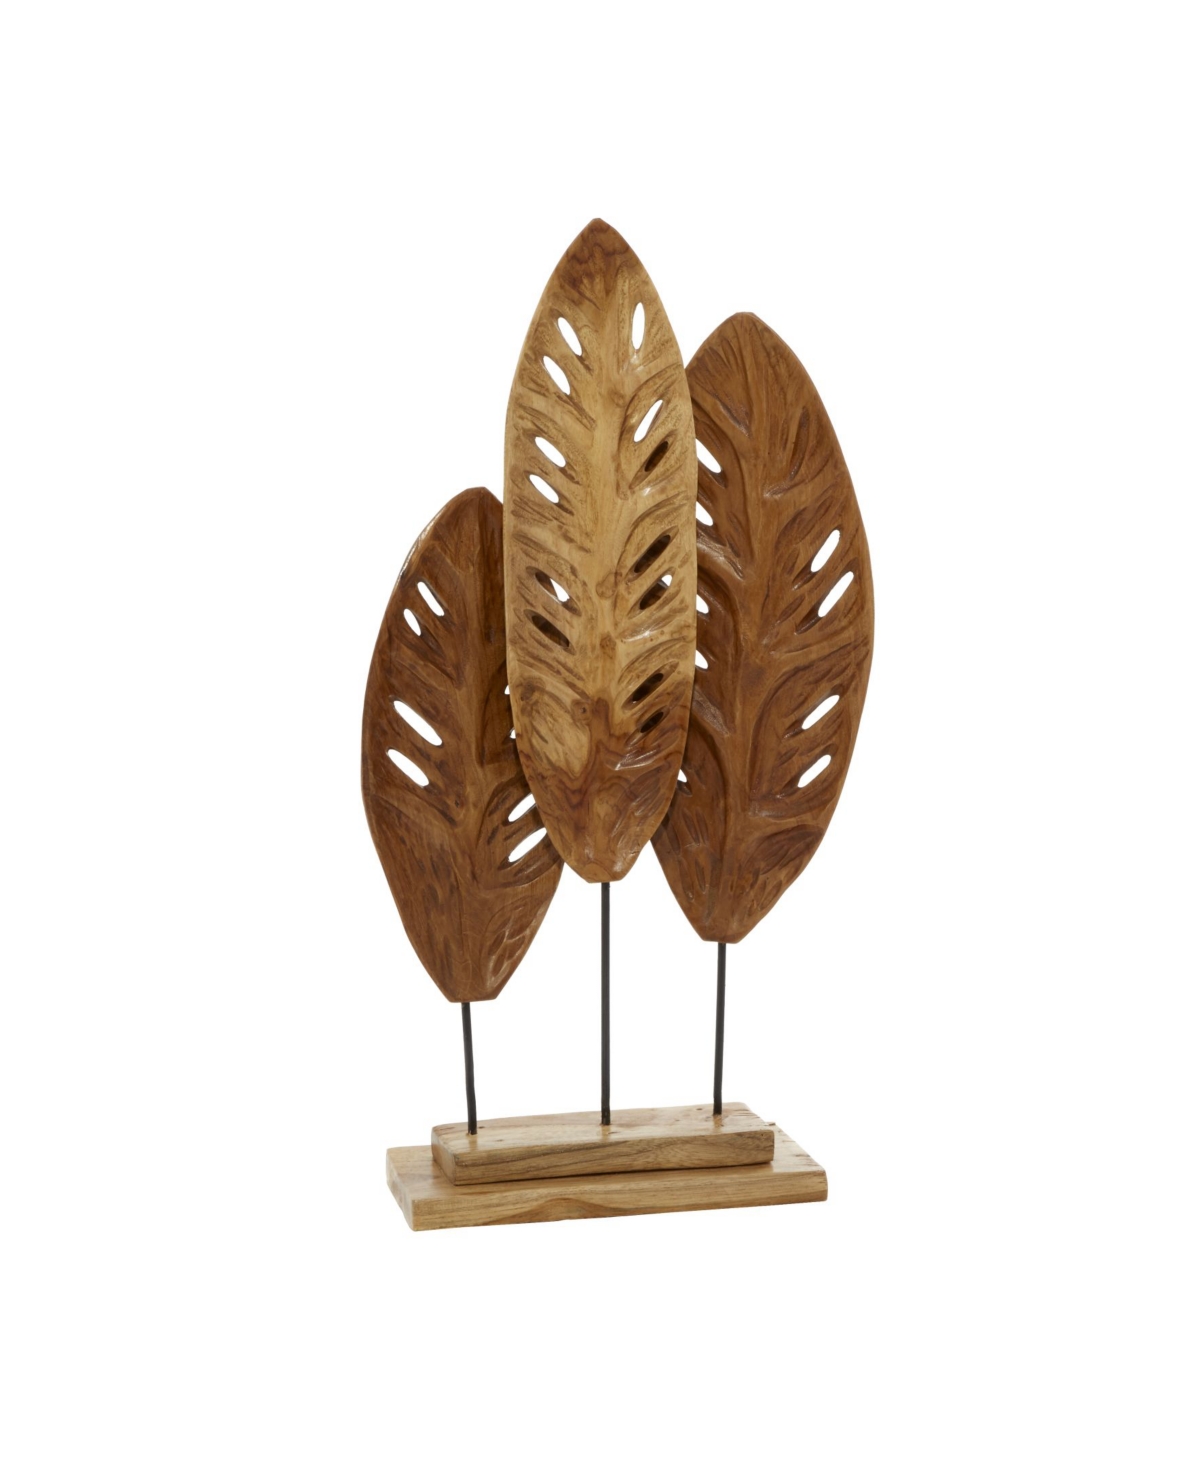 Rosemary Lane Teak Wood Natural Leaves Sculpture, 23" X 12" In Brown